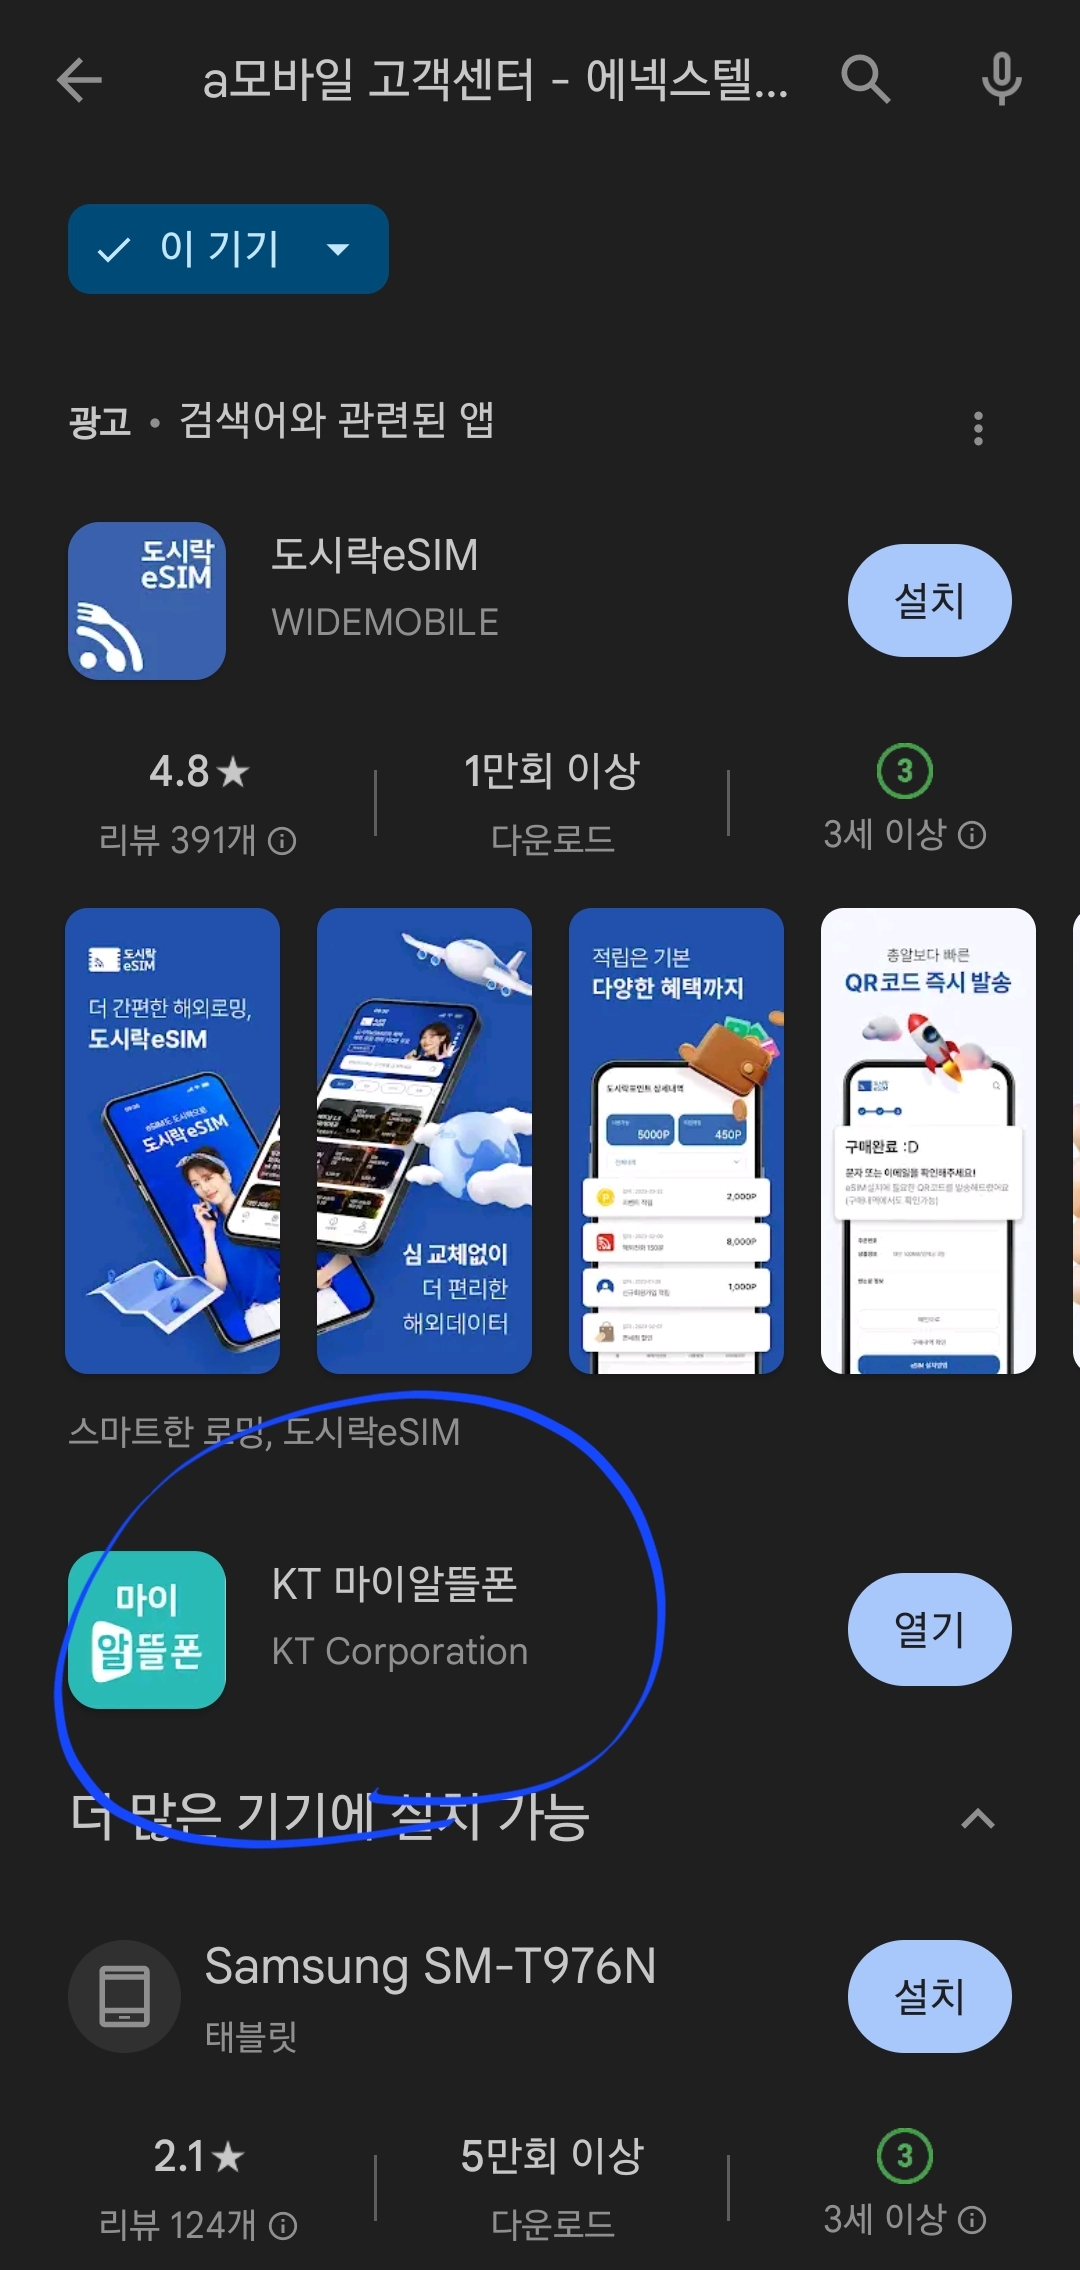 구글플레이스토어 KT 마이알뜰폰 어플 다운받기전